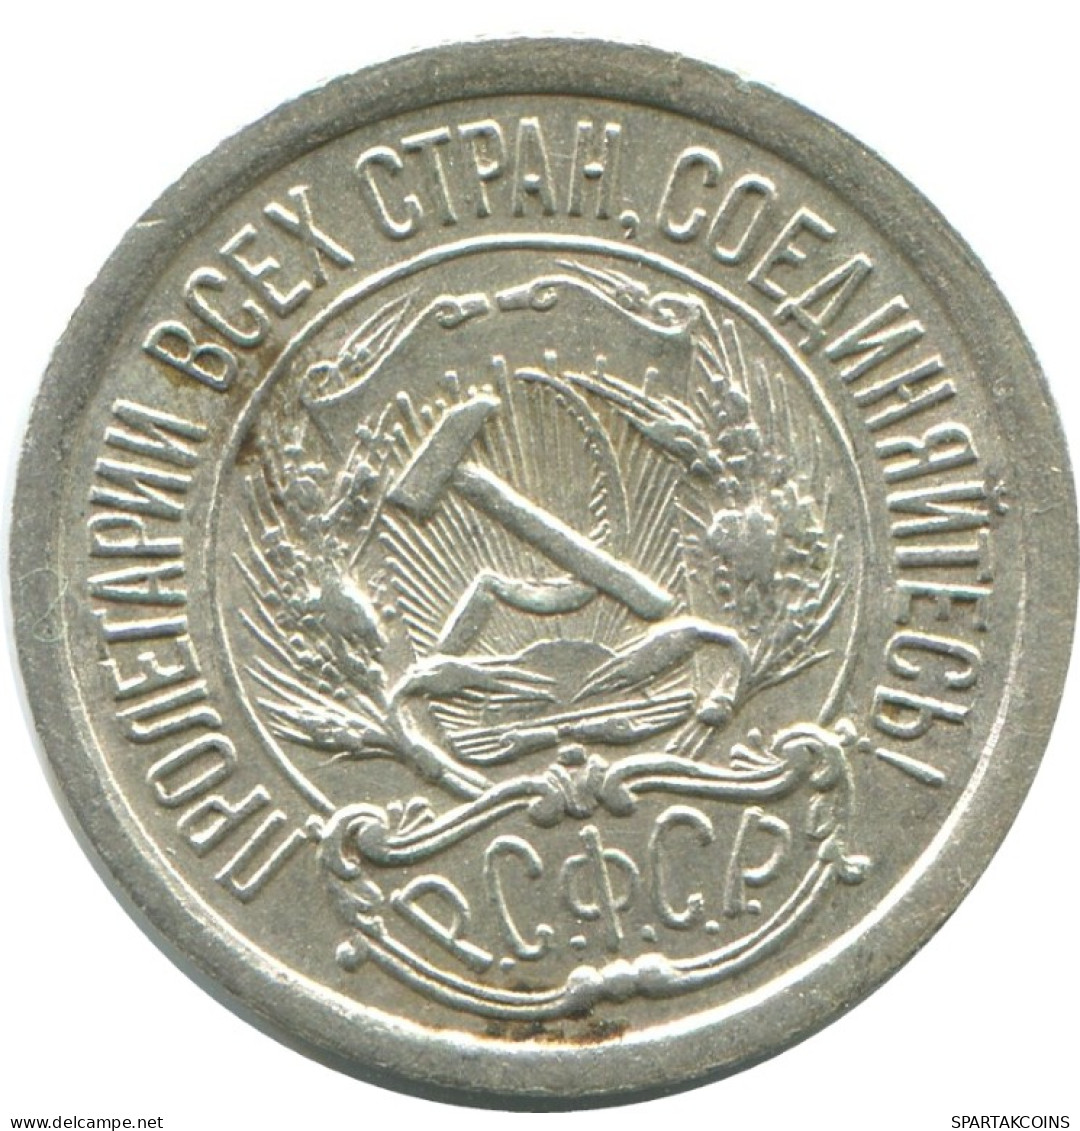 10 KOPEKS 1923 RUSSLAND RUSSIA RSFSR SILBER Münze HIGH GRADE #AE968.4.D.A - Russland